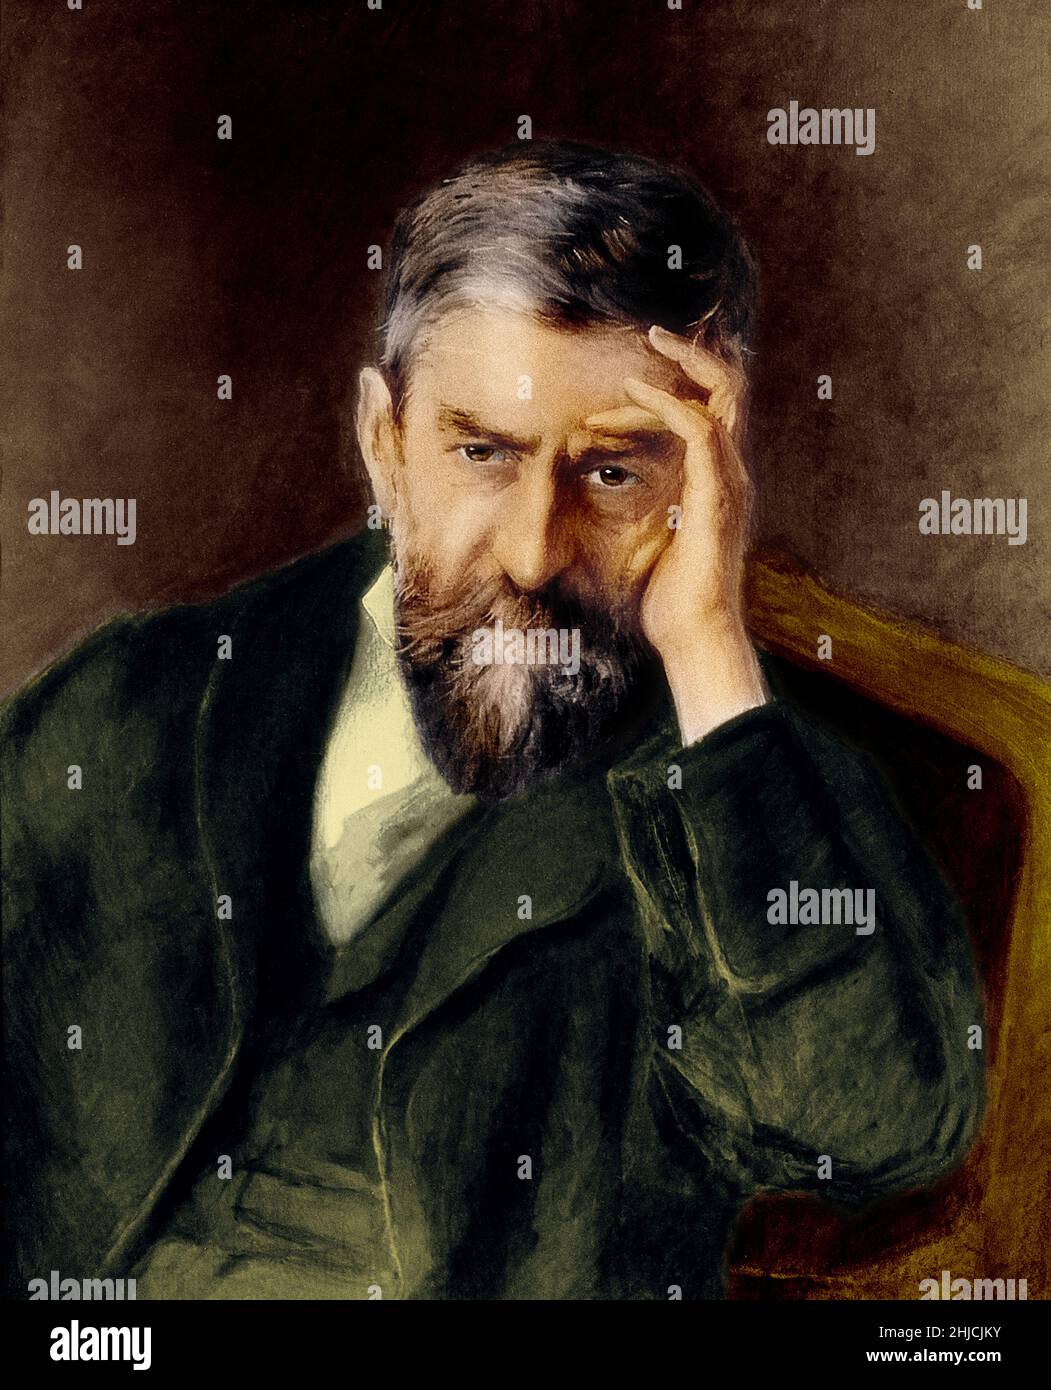 Ritratto colorato di √âmile Duclaux (24 giugno 1840 - 2 maggio 1904), microbiologo e chimico francese più noto per il suo lavoro nel laboratorio di Louis Pasteur. Dopo un dipinto di E. Bordes, circa 1903. Foto Stock